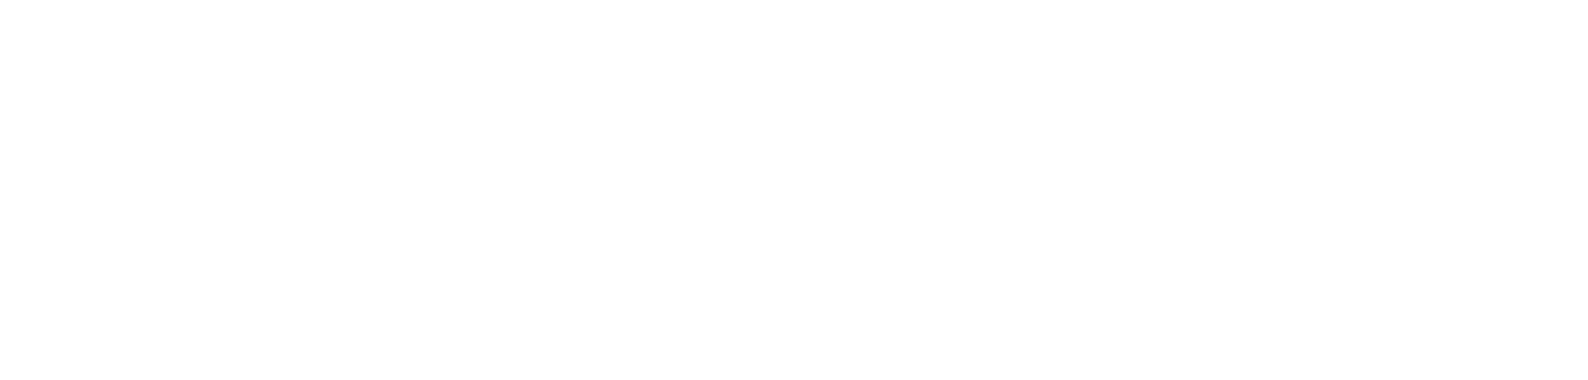 Kunlun Tech logo pour fonds sombres (PNG transparent)